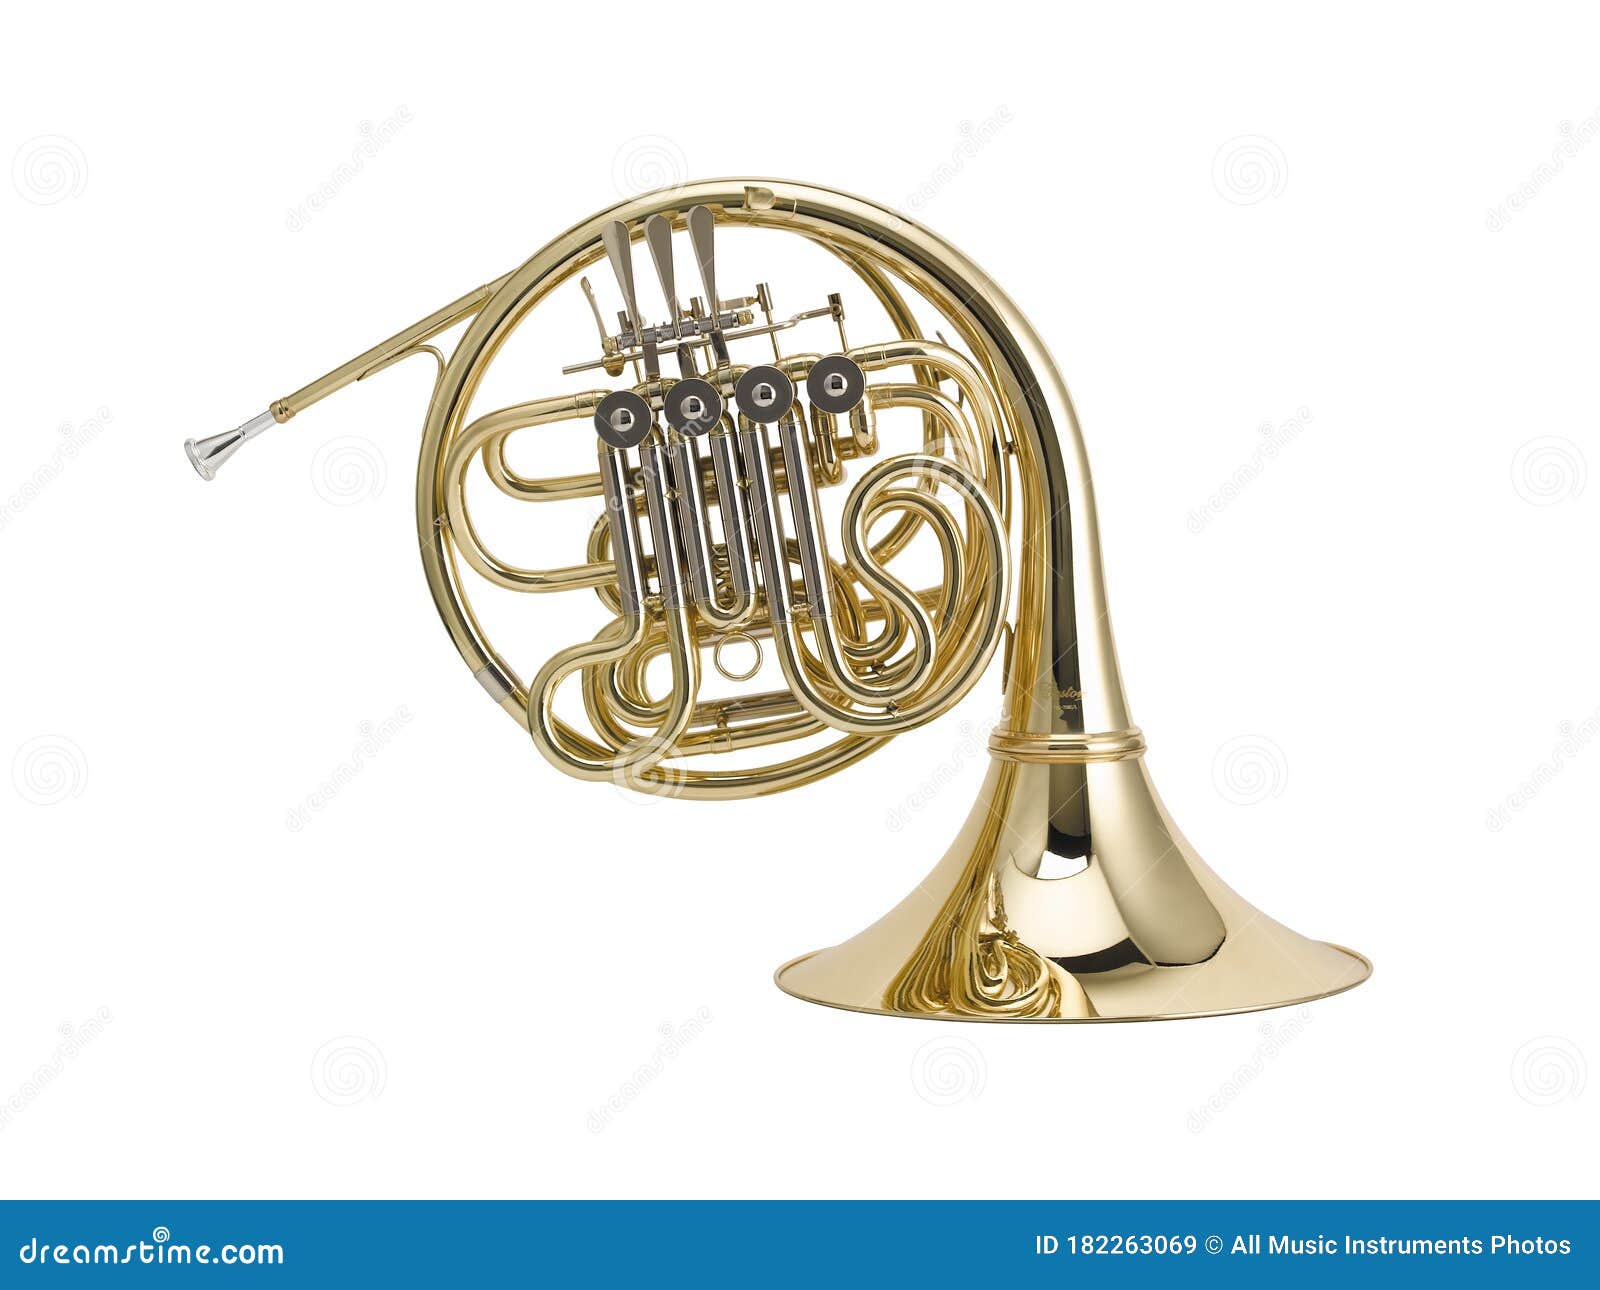 golden french horn , horn, brass music instrument  on white background